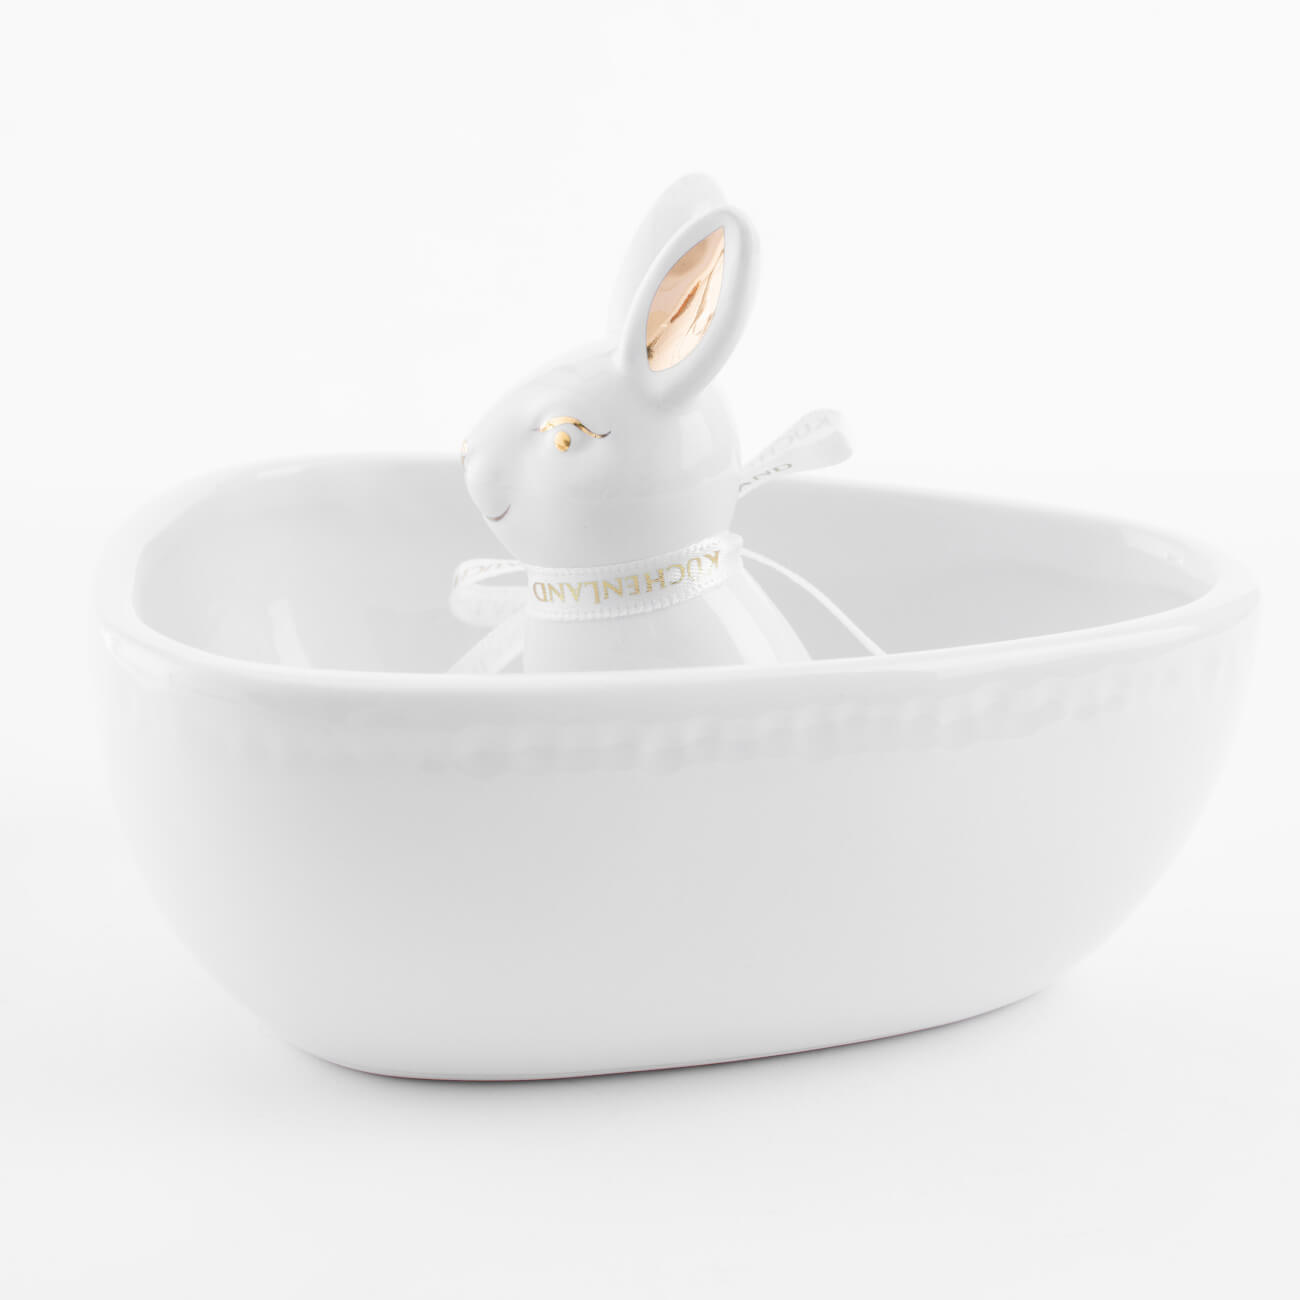 Конфетница, 13х13 см, керамика, бело-золотистая, Кролик внутри, Easter gold изображение № 1